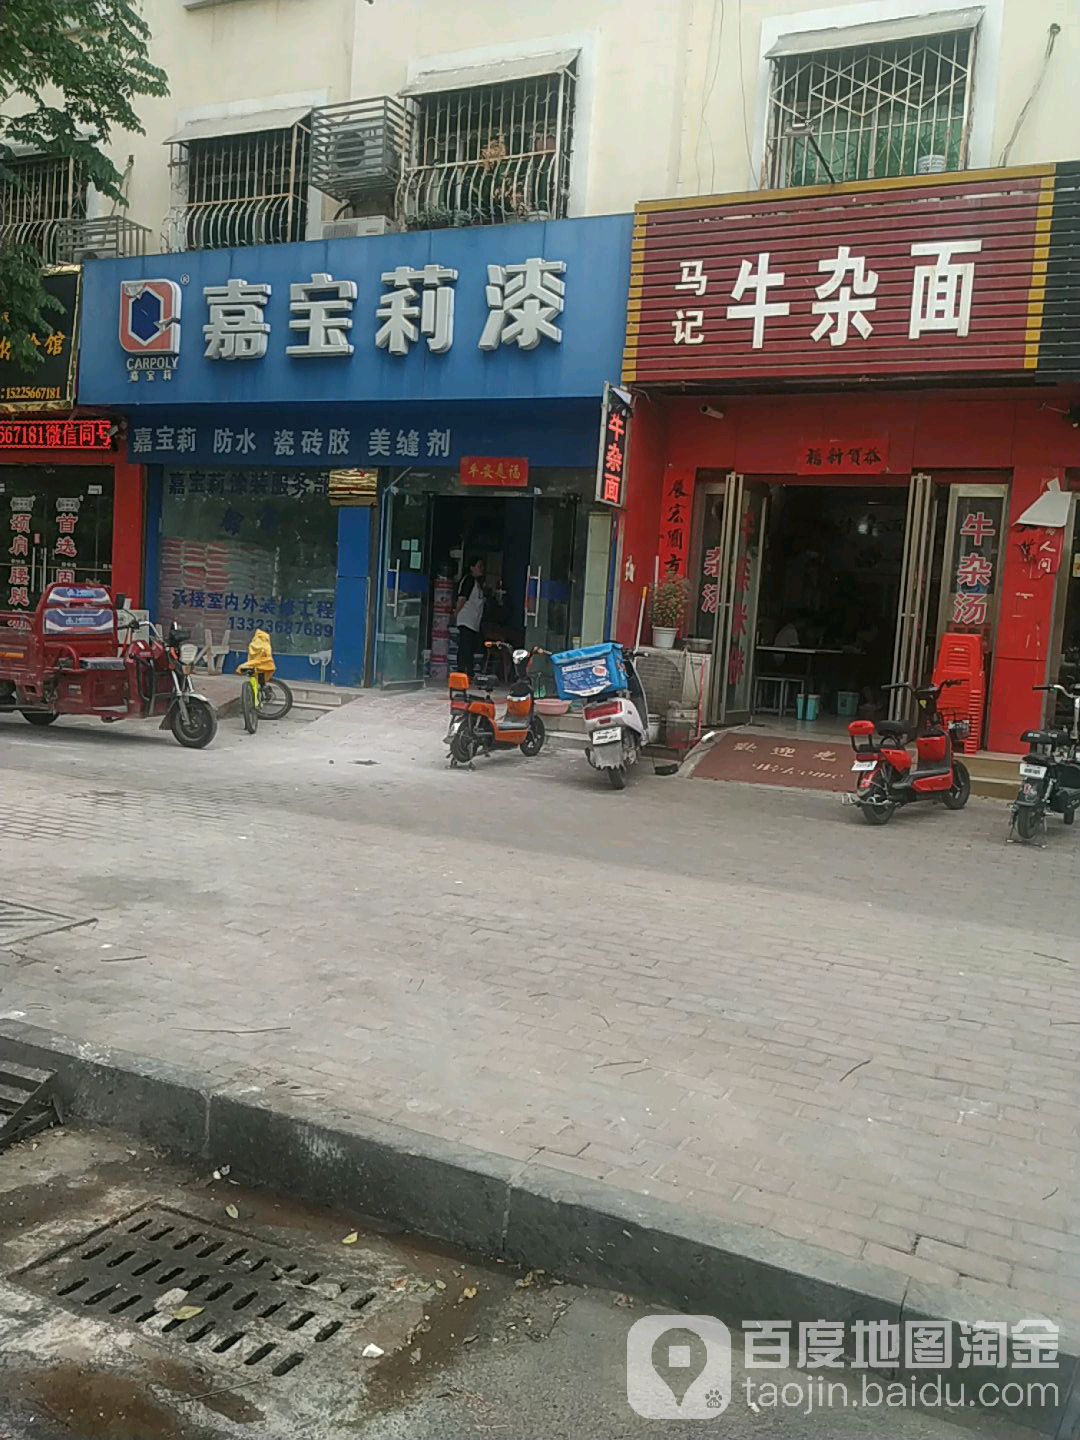 嘉寶莉漆(北京中路店)